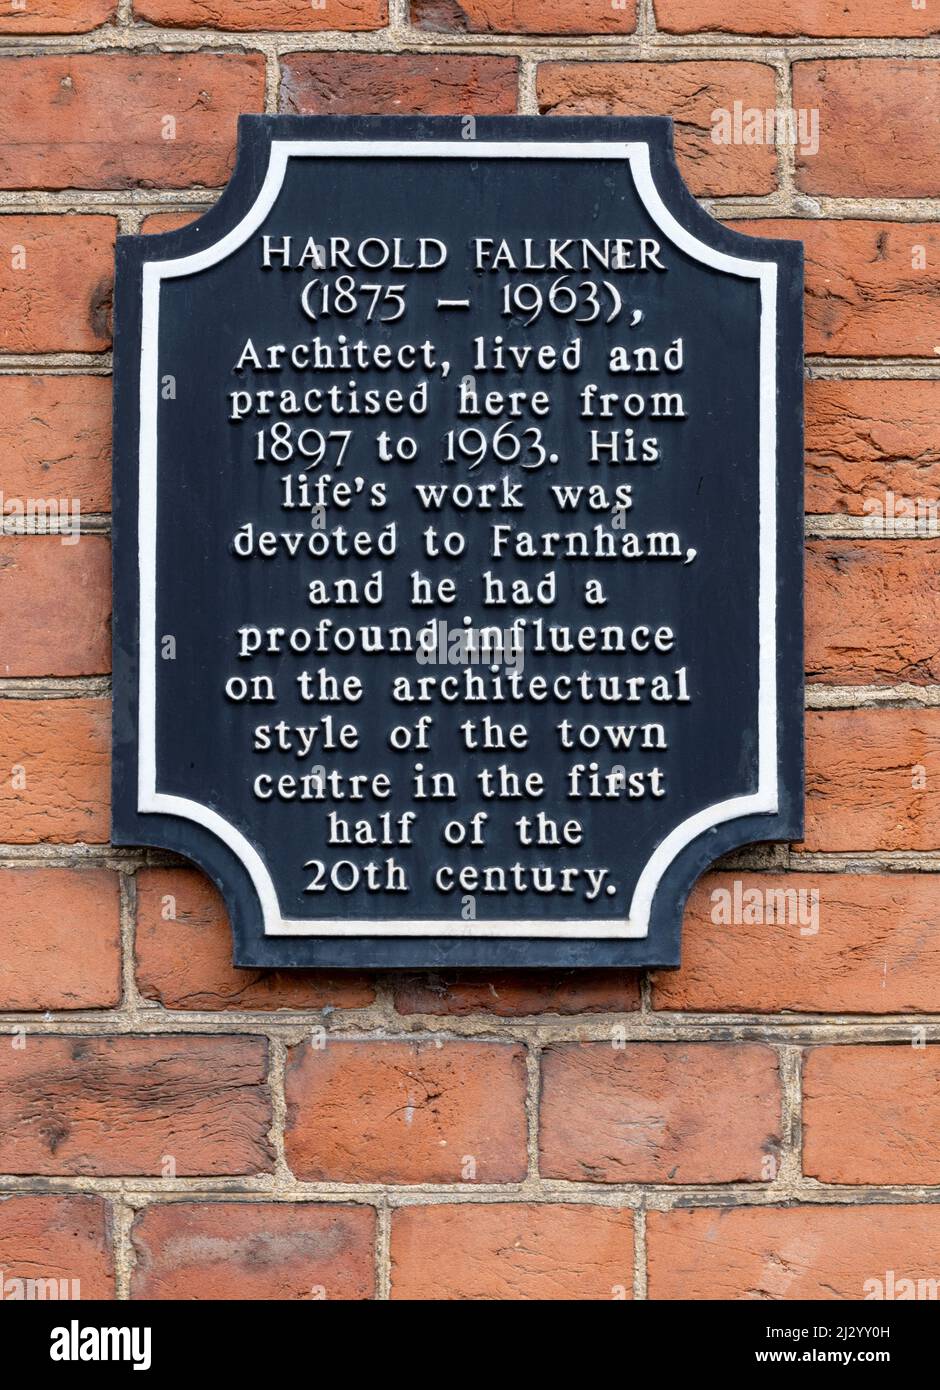 Plaque du patrimoine pour Harold Falkner 1875-1963 à Farnham, Surrey, Angleterre, Royaume-Uni - architecte, a vécu et pratiqué à Farnham Banque D'Images